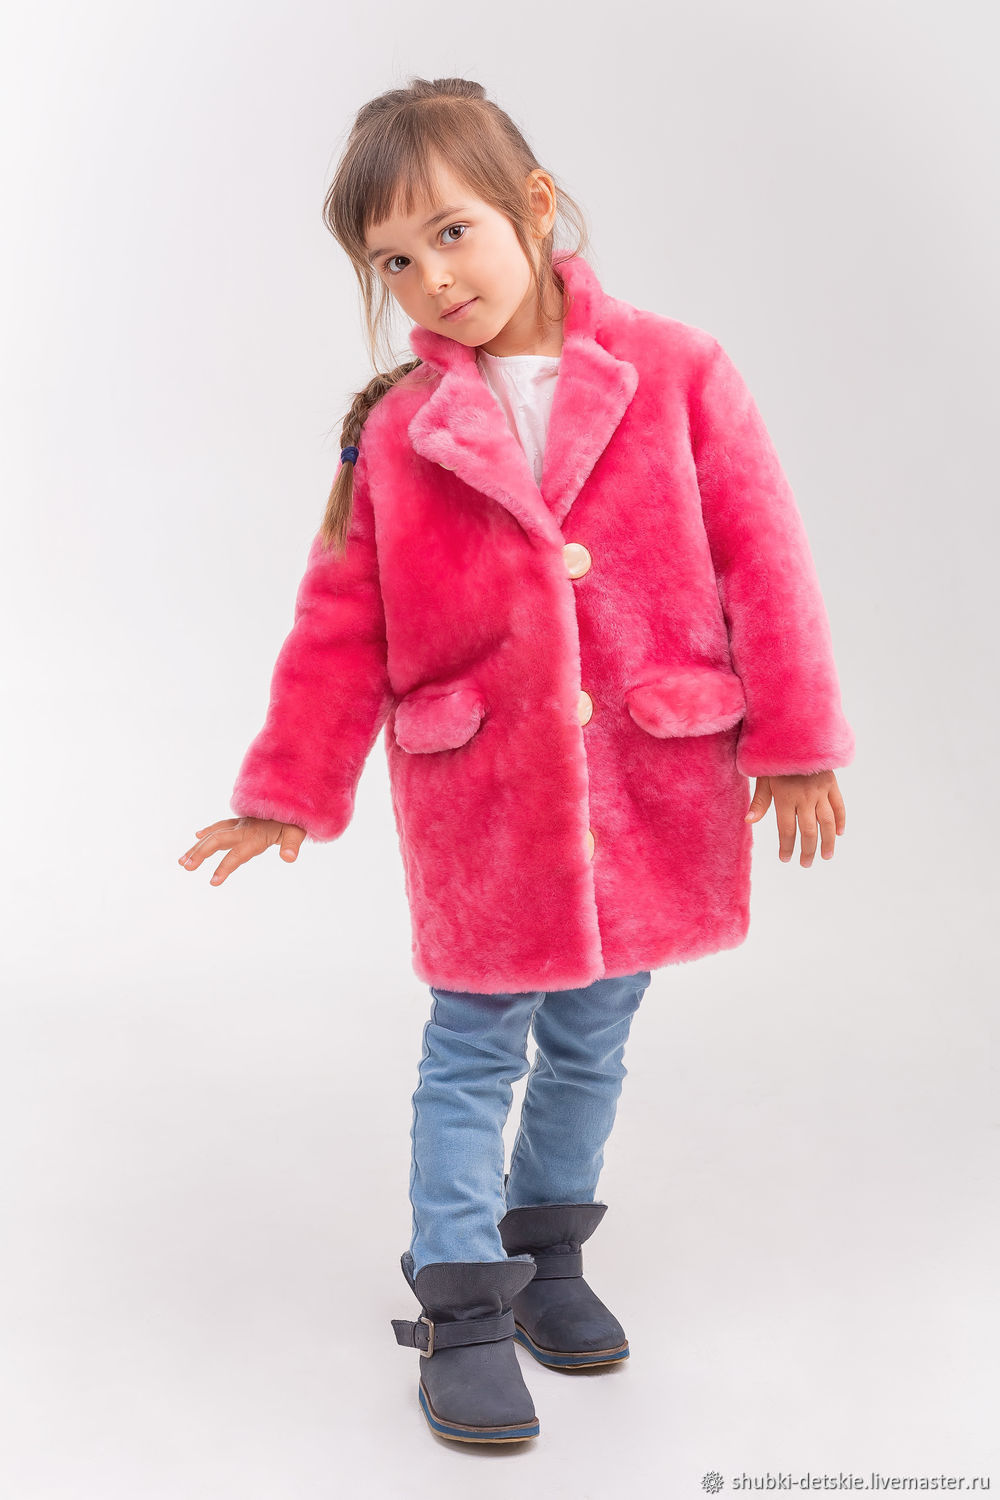 Детская одежда для девочек - меховое пальто